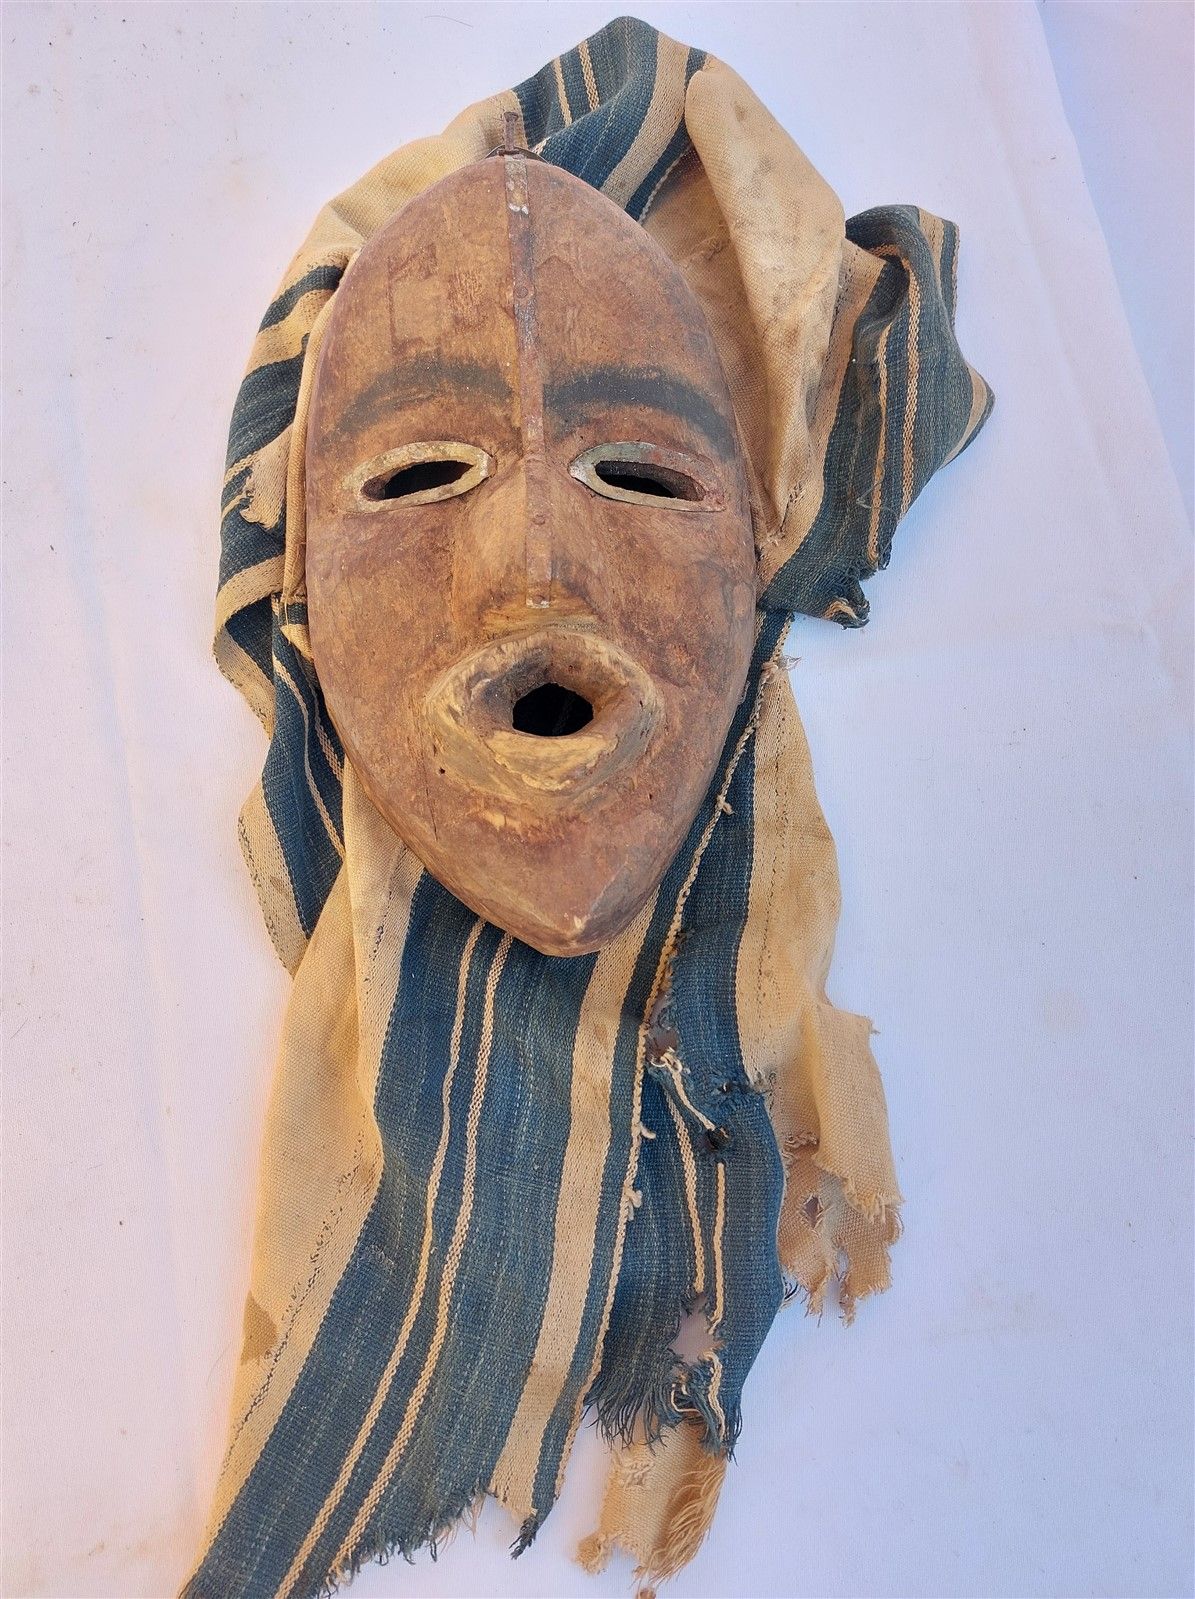 Null Masque en bois sculpté, fer et tissu. Ht. 25cm